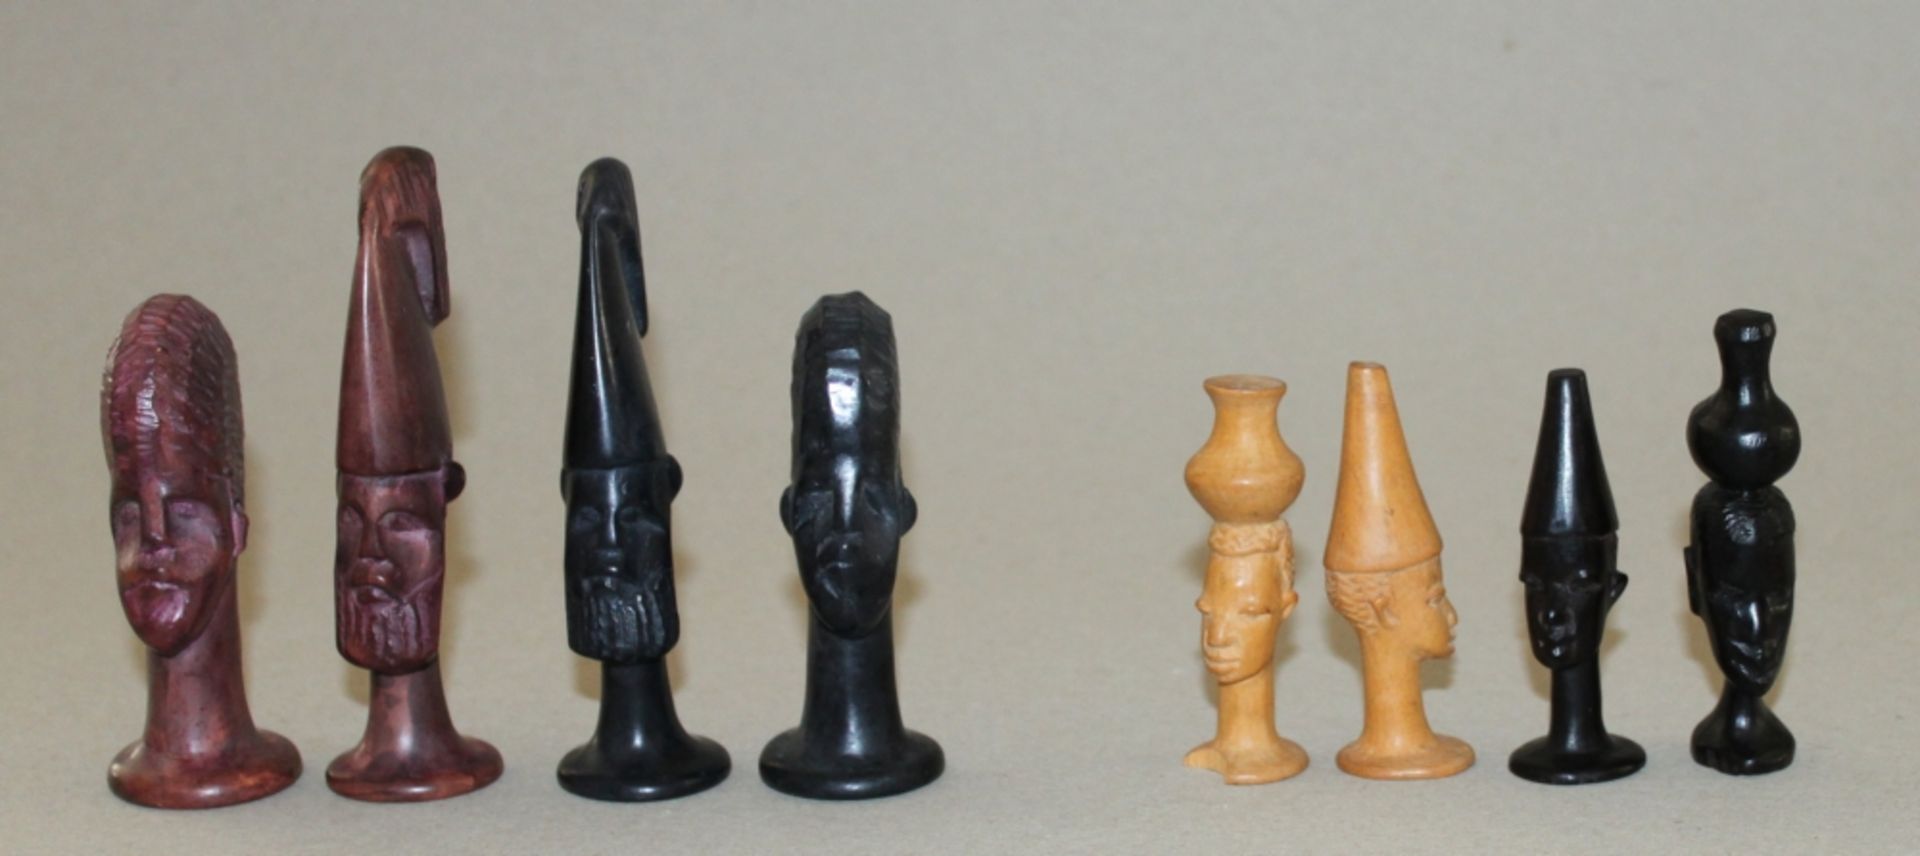 Afrika. Zwei Schachfigurensätze einer aus Holz, der andere aus Speckstein, im traditionellen